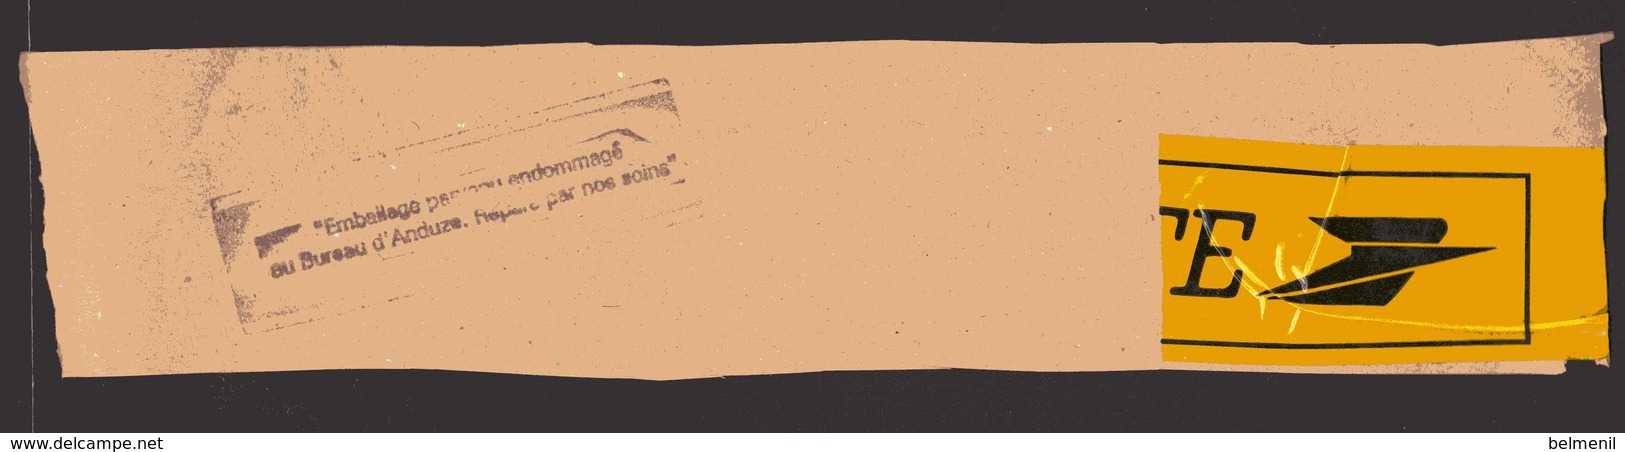 Cachet Linéaire Noir " Emballage Parvenu Endommagé Au Bureau D'Anduze " Réparé Par Nos Soins  ( Scotch Jaune La Poste ) - Lettres Accidentées